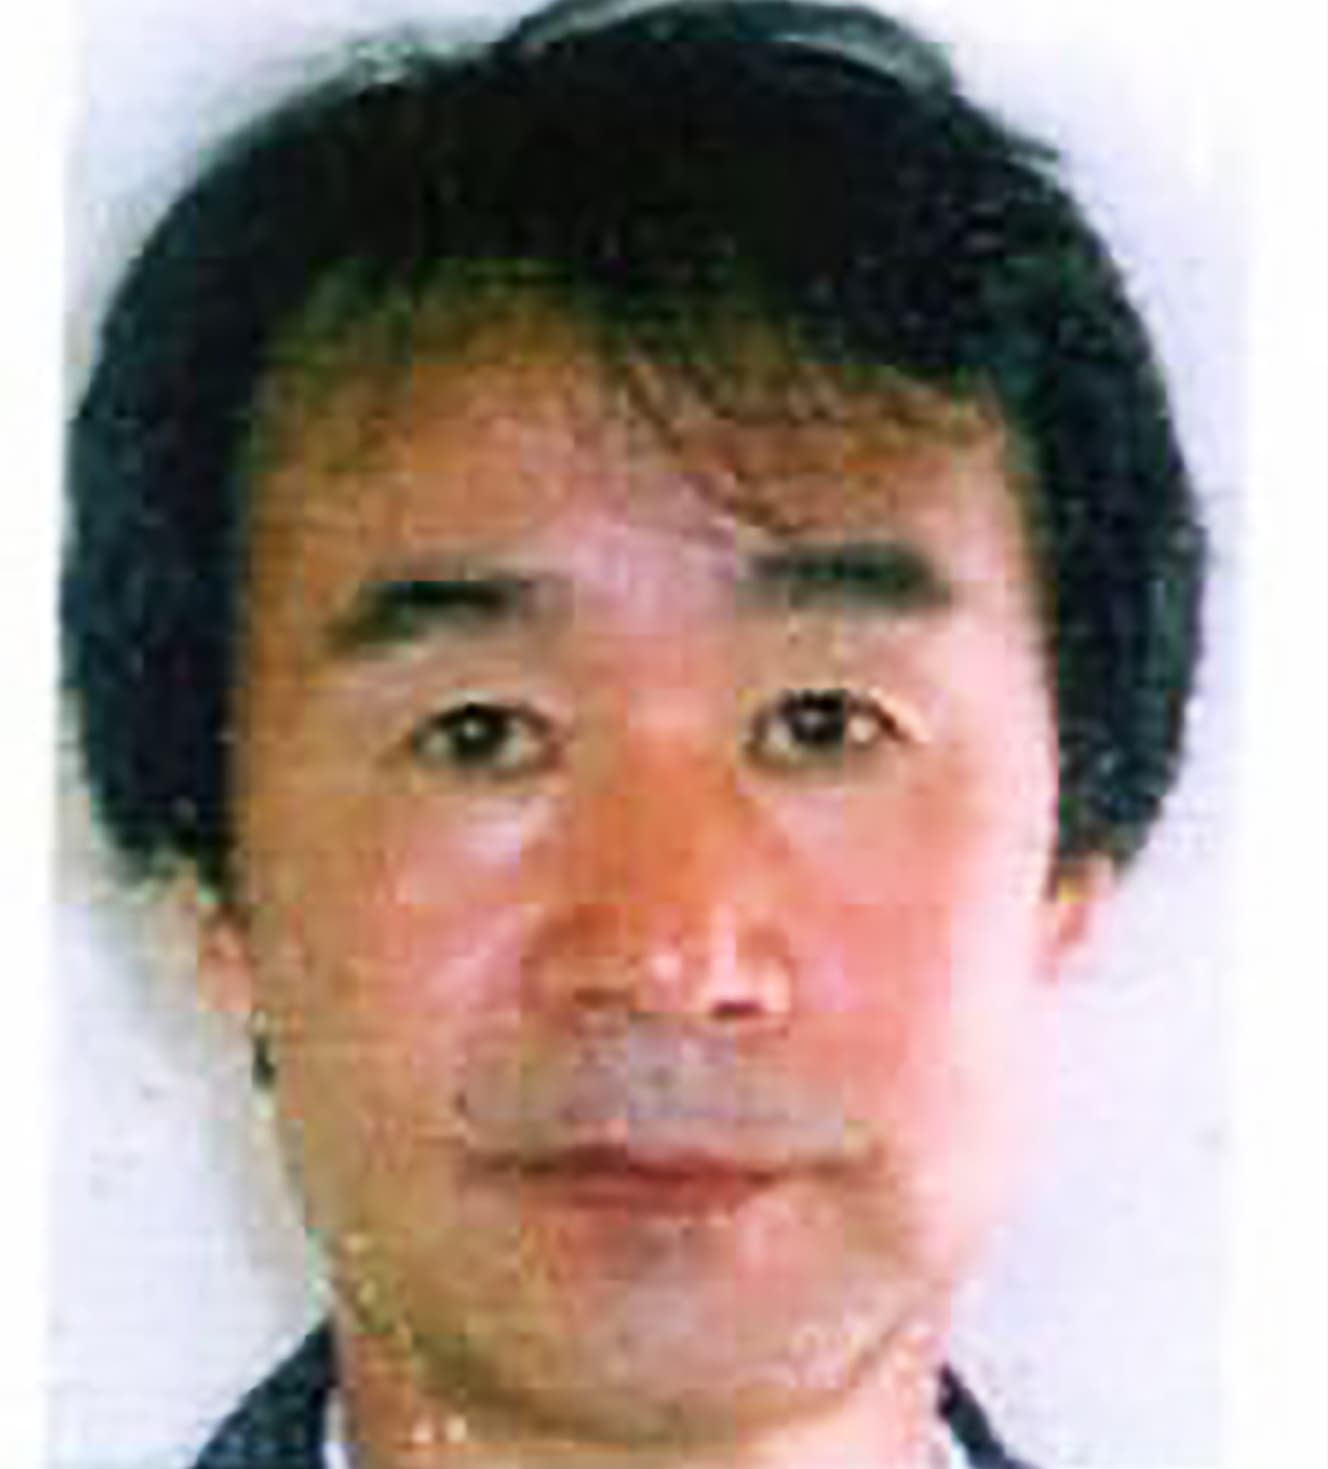 越智 清（71）《殺人》’06年２～３月、大阪府寝屋川市で同居する妻を殺害。遺体を解体後、妻の所持品を売って逃亡。死亡しているという説も